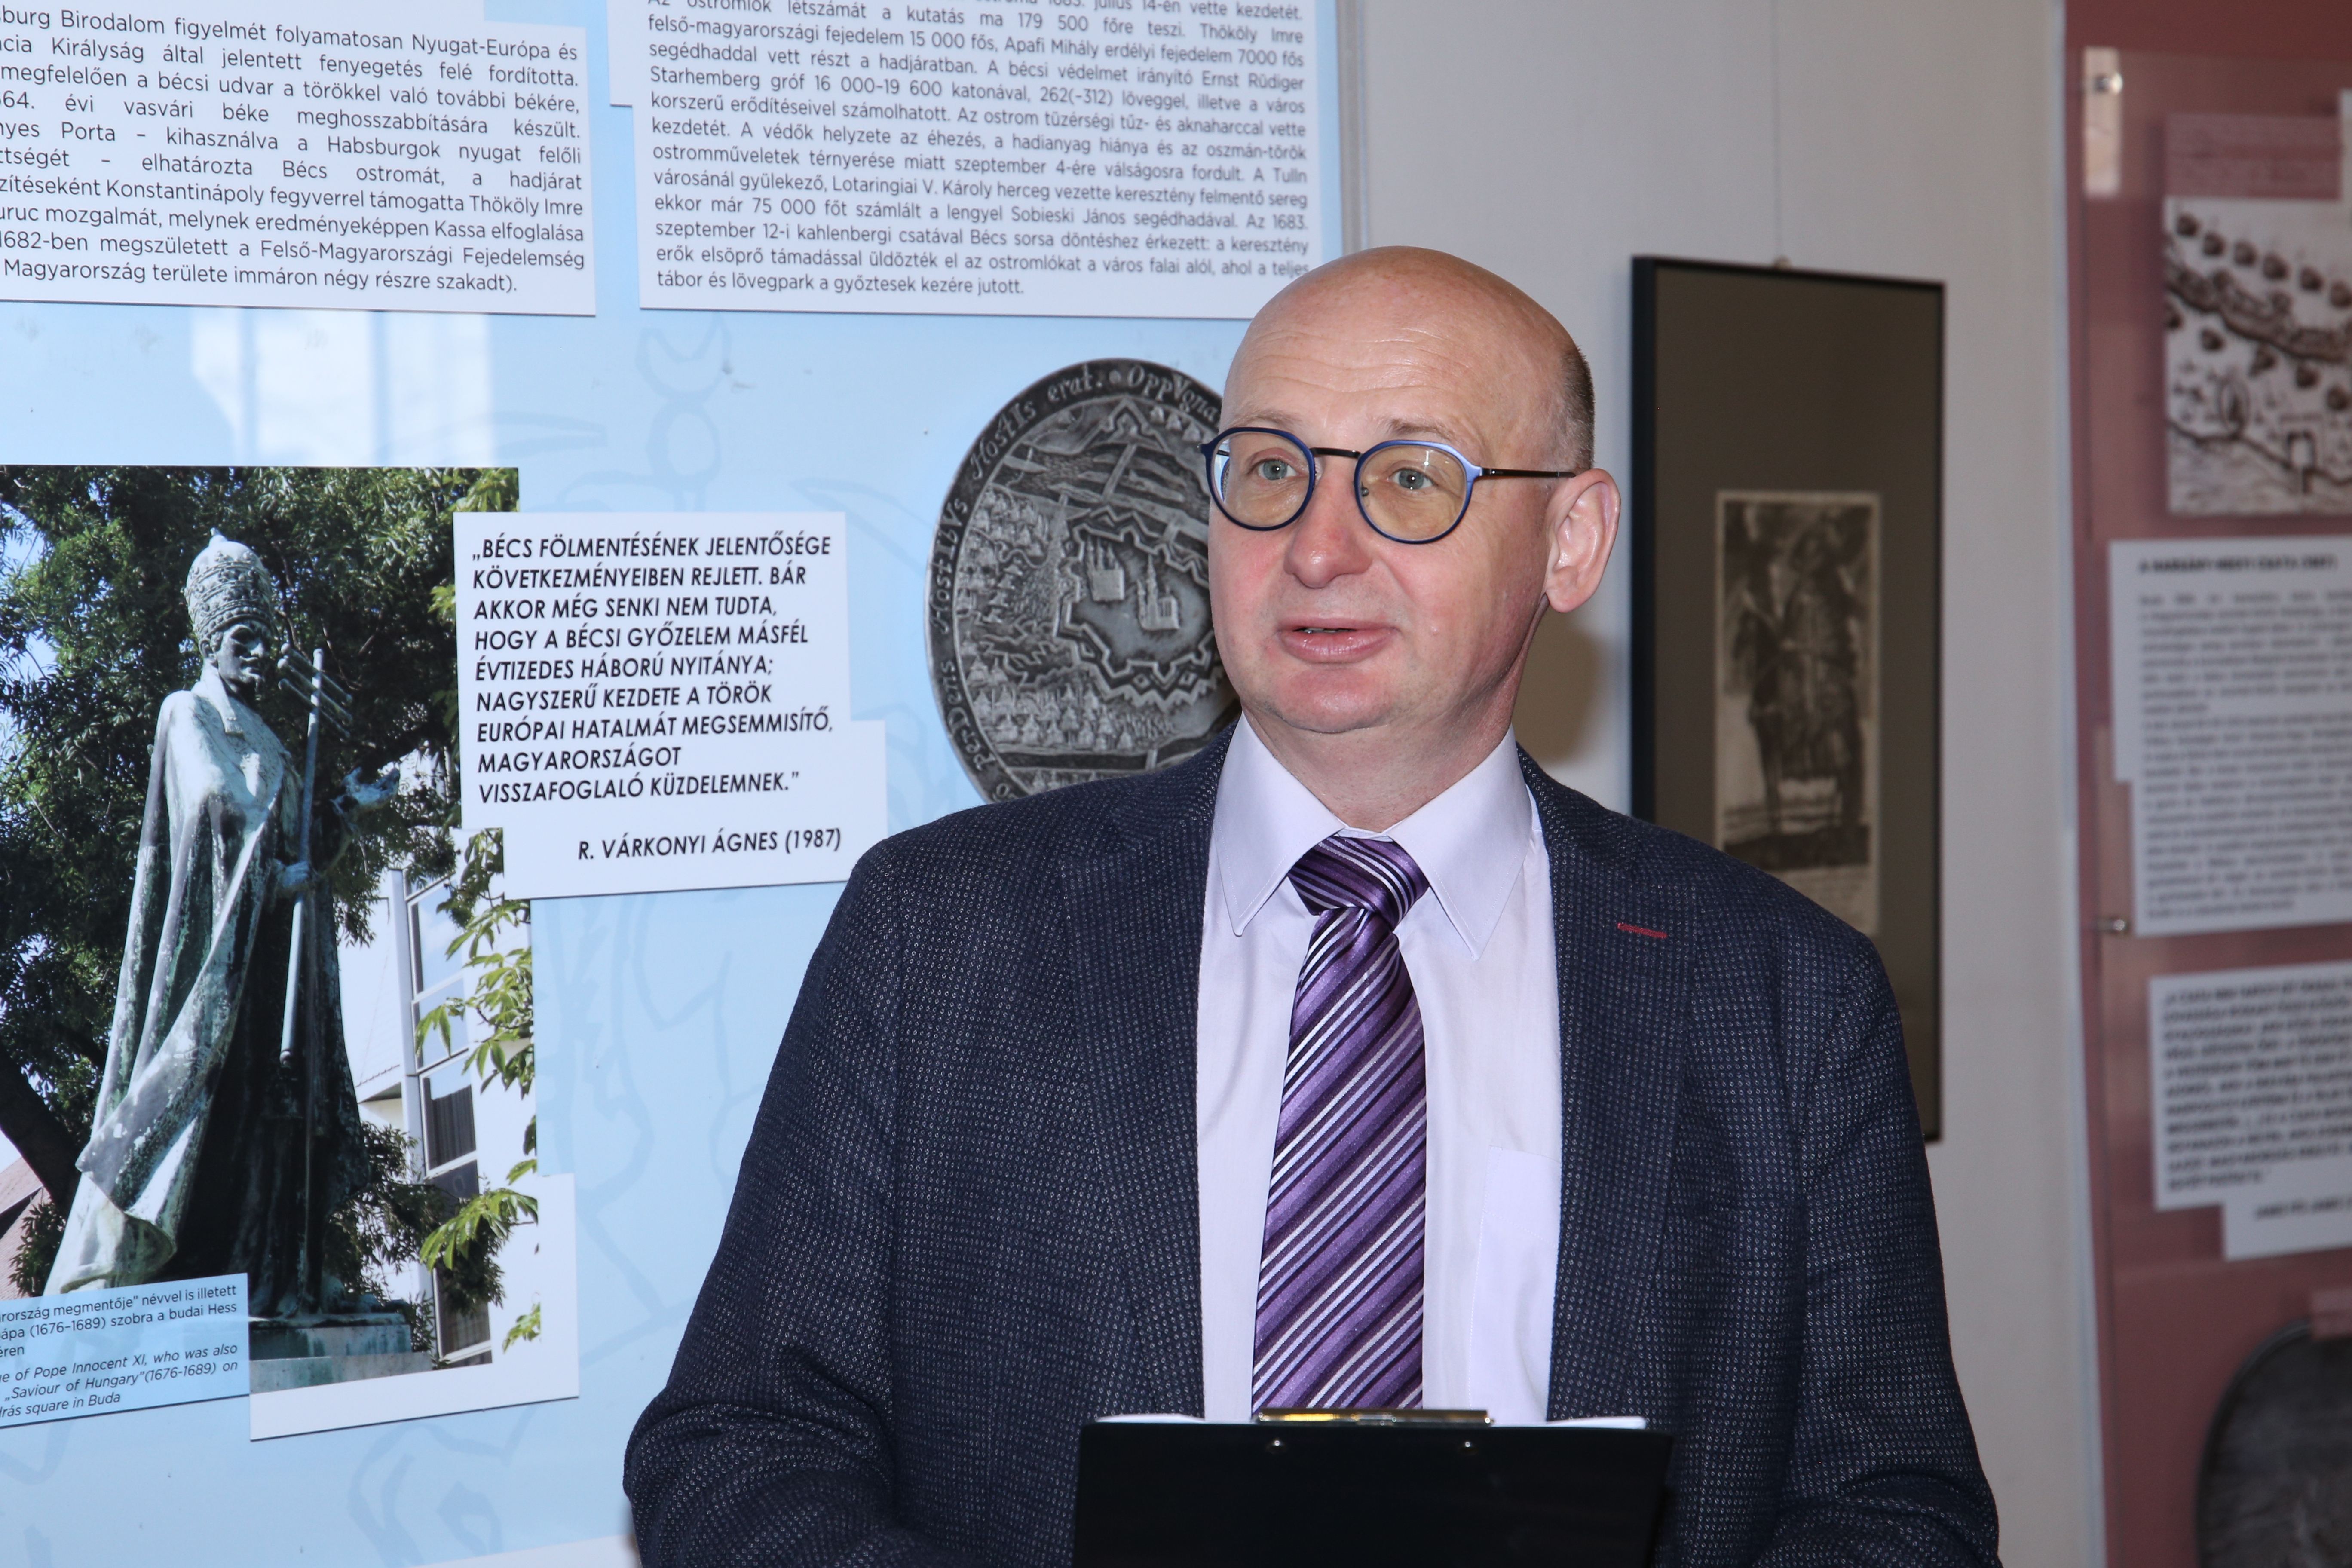 Tóth Ferenc kiállítás-megnyitó előadása a Hadtörténelmi Múzeumban